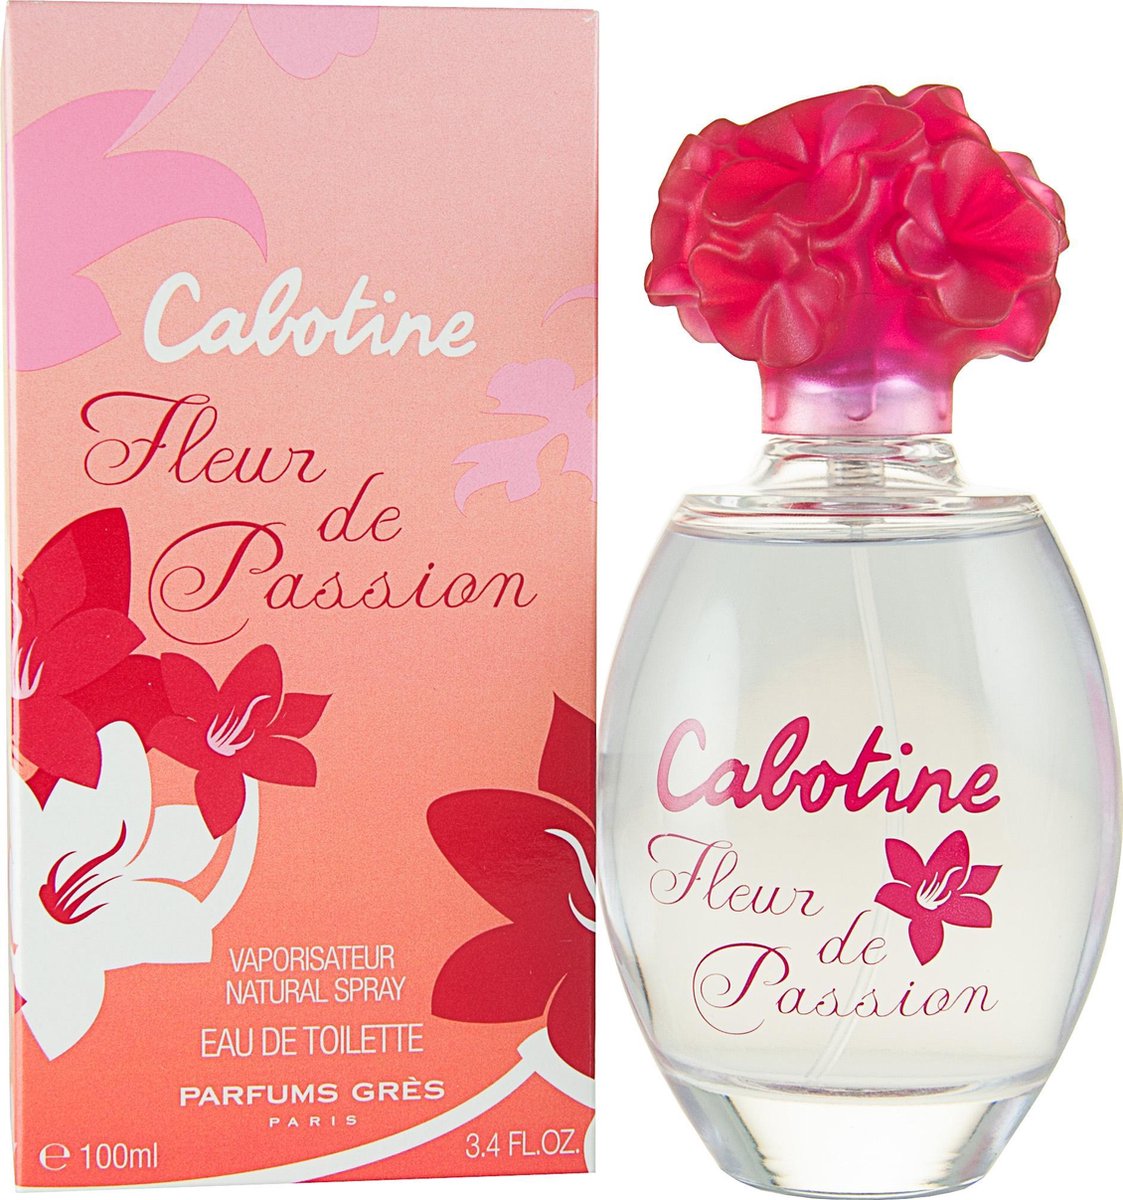 Cabotine Fleur de Passion for Women - 100 ml - Eau de toilette